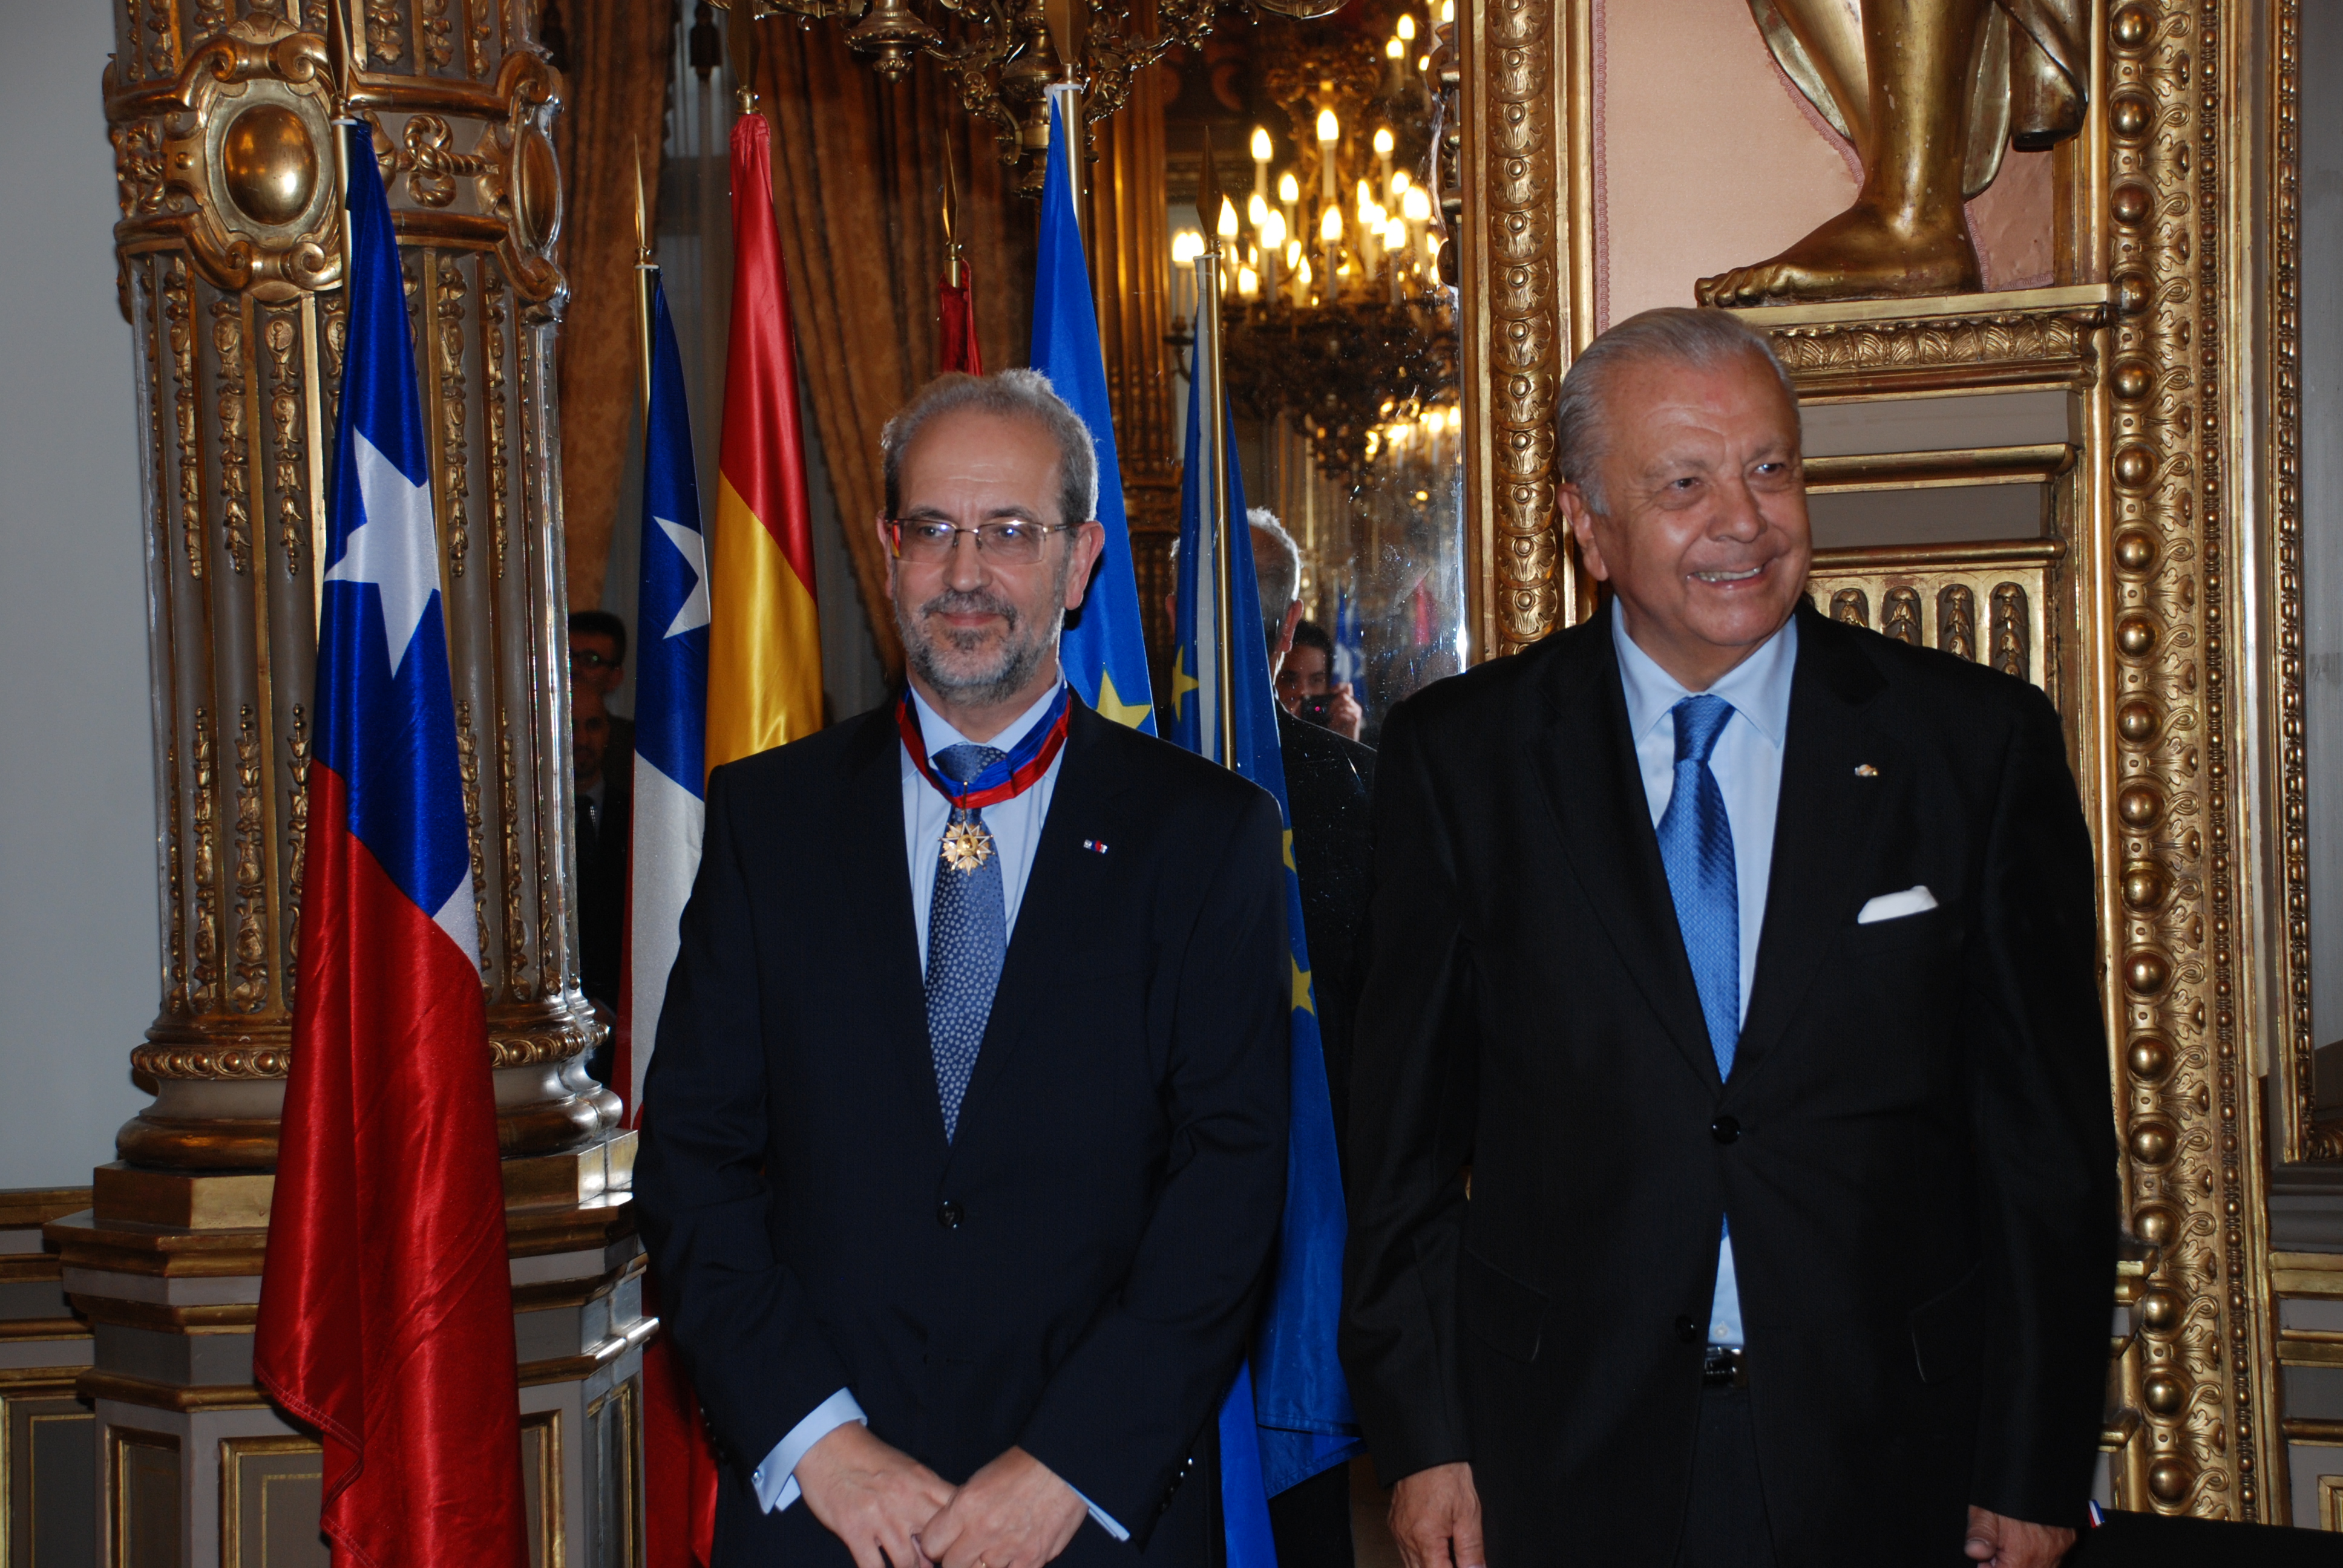 El rector de la Universidad de Salamanca, Daniel Hernández Ruipérez, ha sido distinguido con la orden ‘Bernardo O’Higgins’